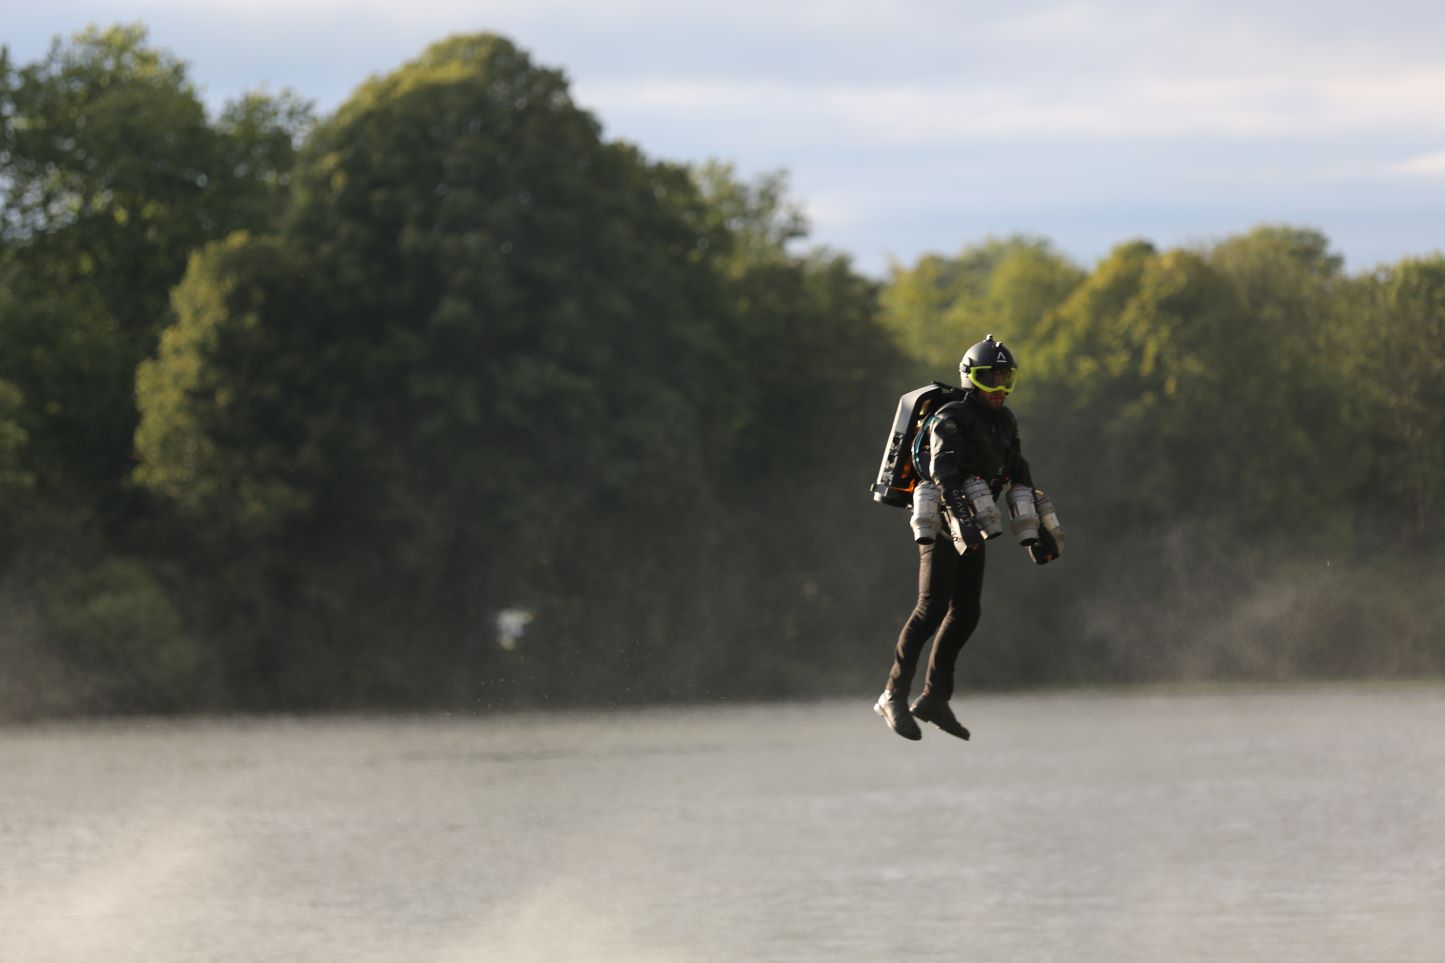 Gravity jet suit testing at lake (ph. credit Fraser Corsan)